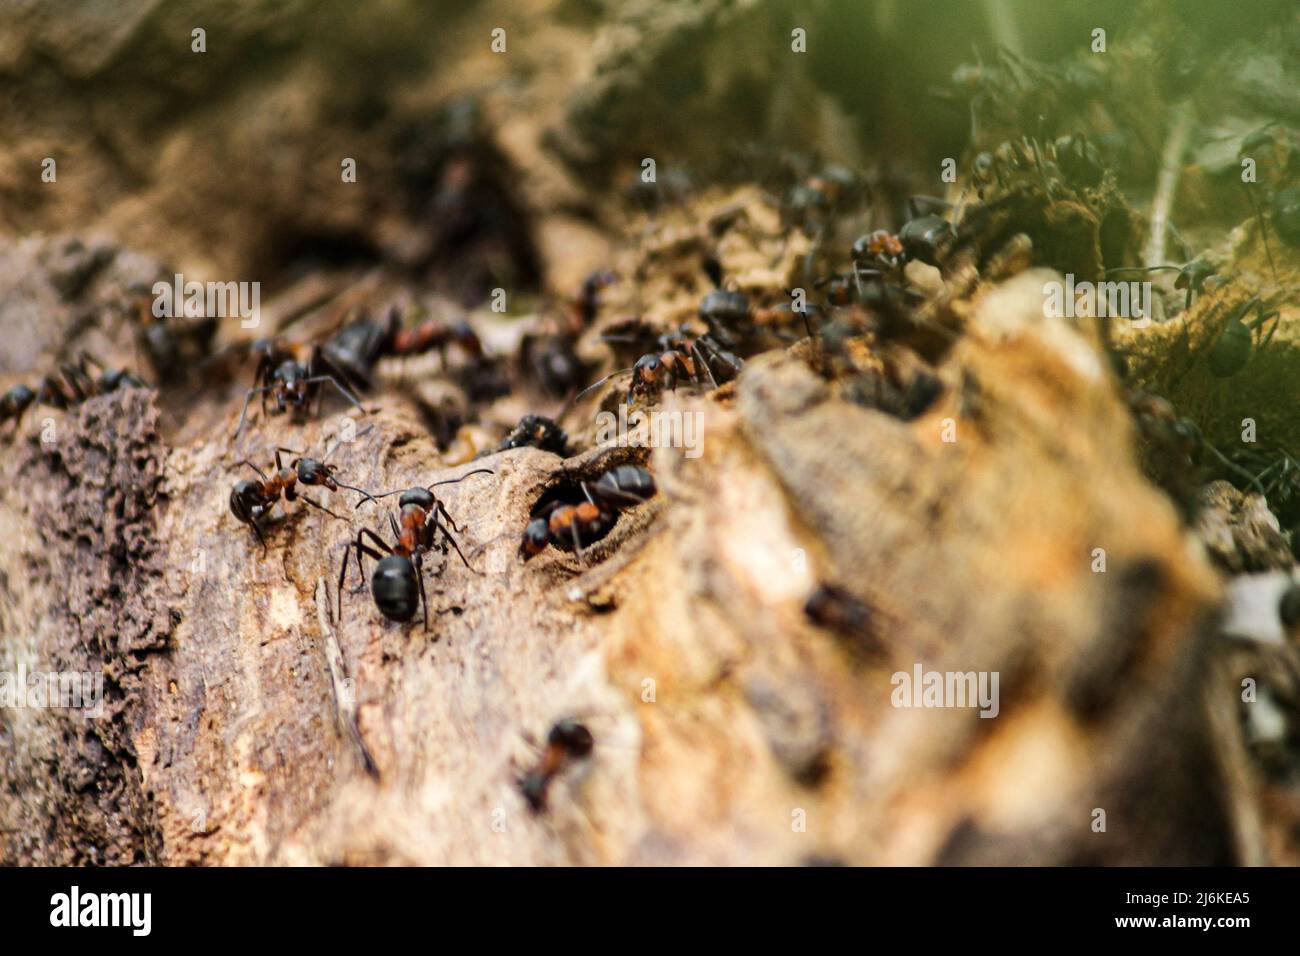 Die südlichen Waldarbeiterameisen sind die größten Ameisen Großbritanniens, die bis zu 10mm lang sind. Sammeln von Material für den Bau ihres Nestes Stockfoto